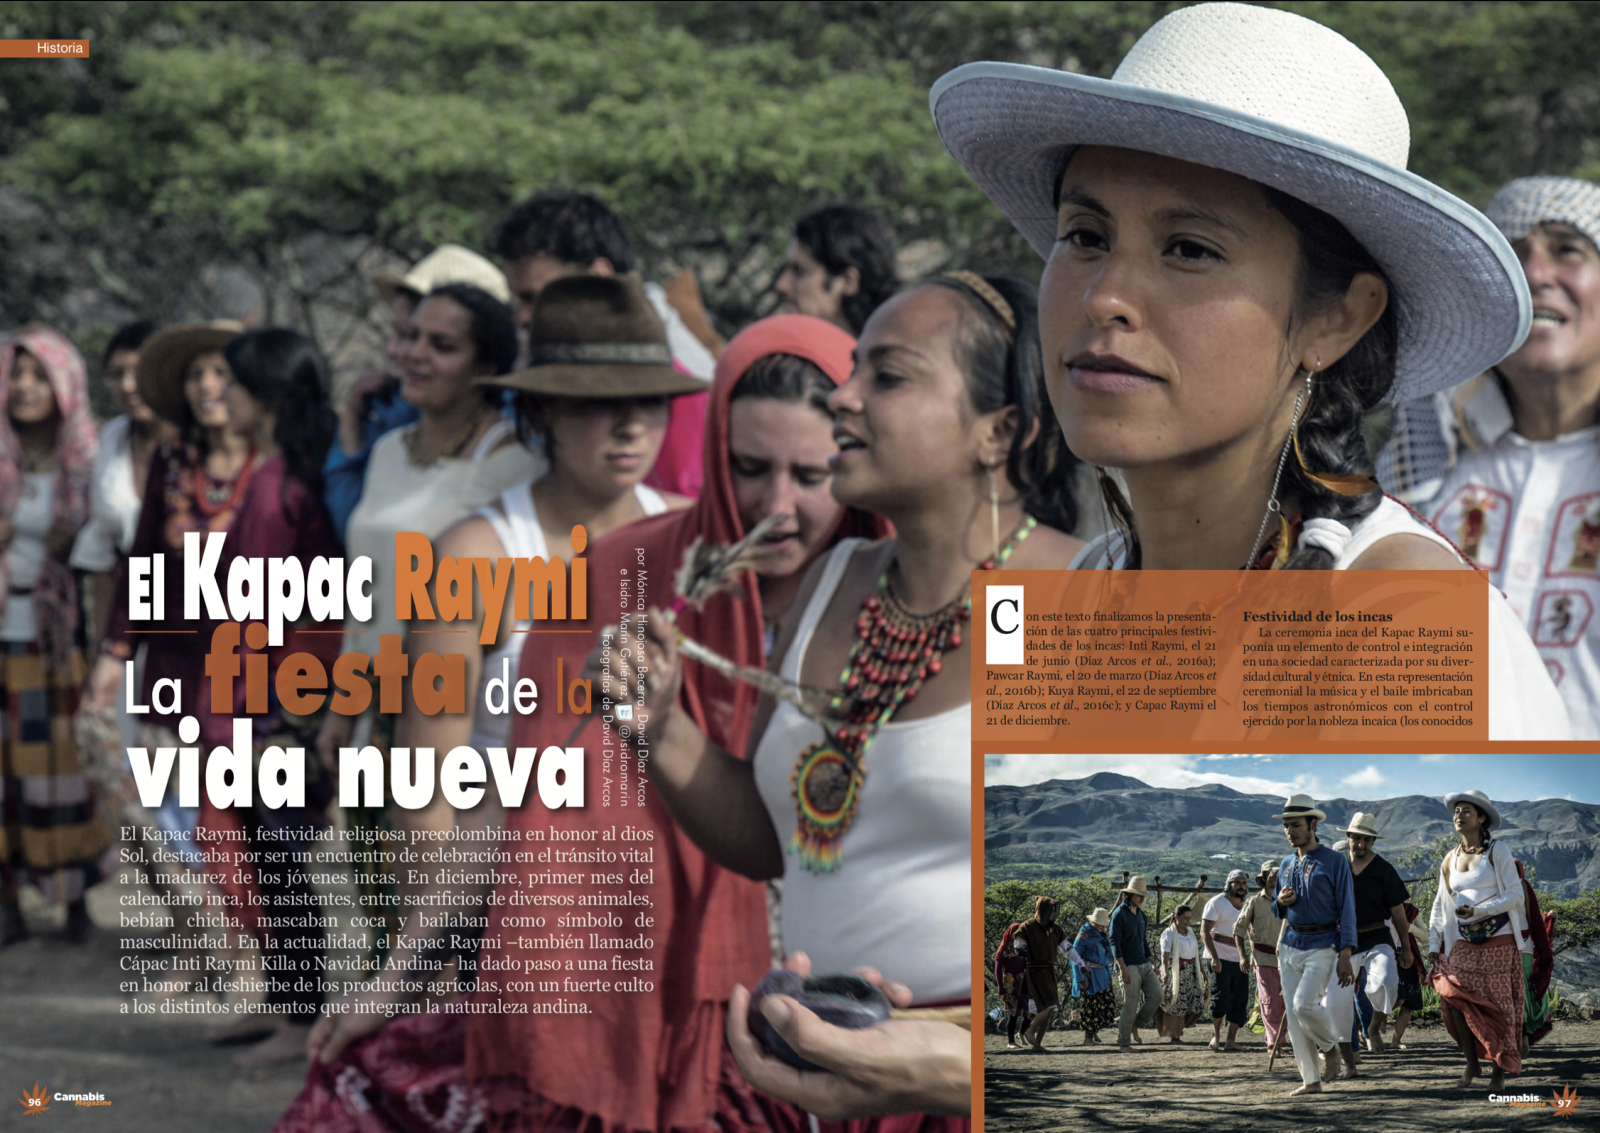 Thumbnail of Kapac Raymi, La fiesta de la nueva vida